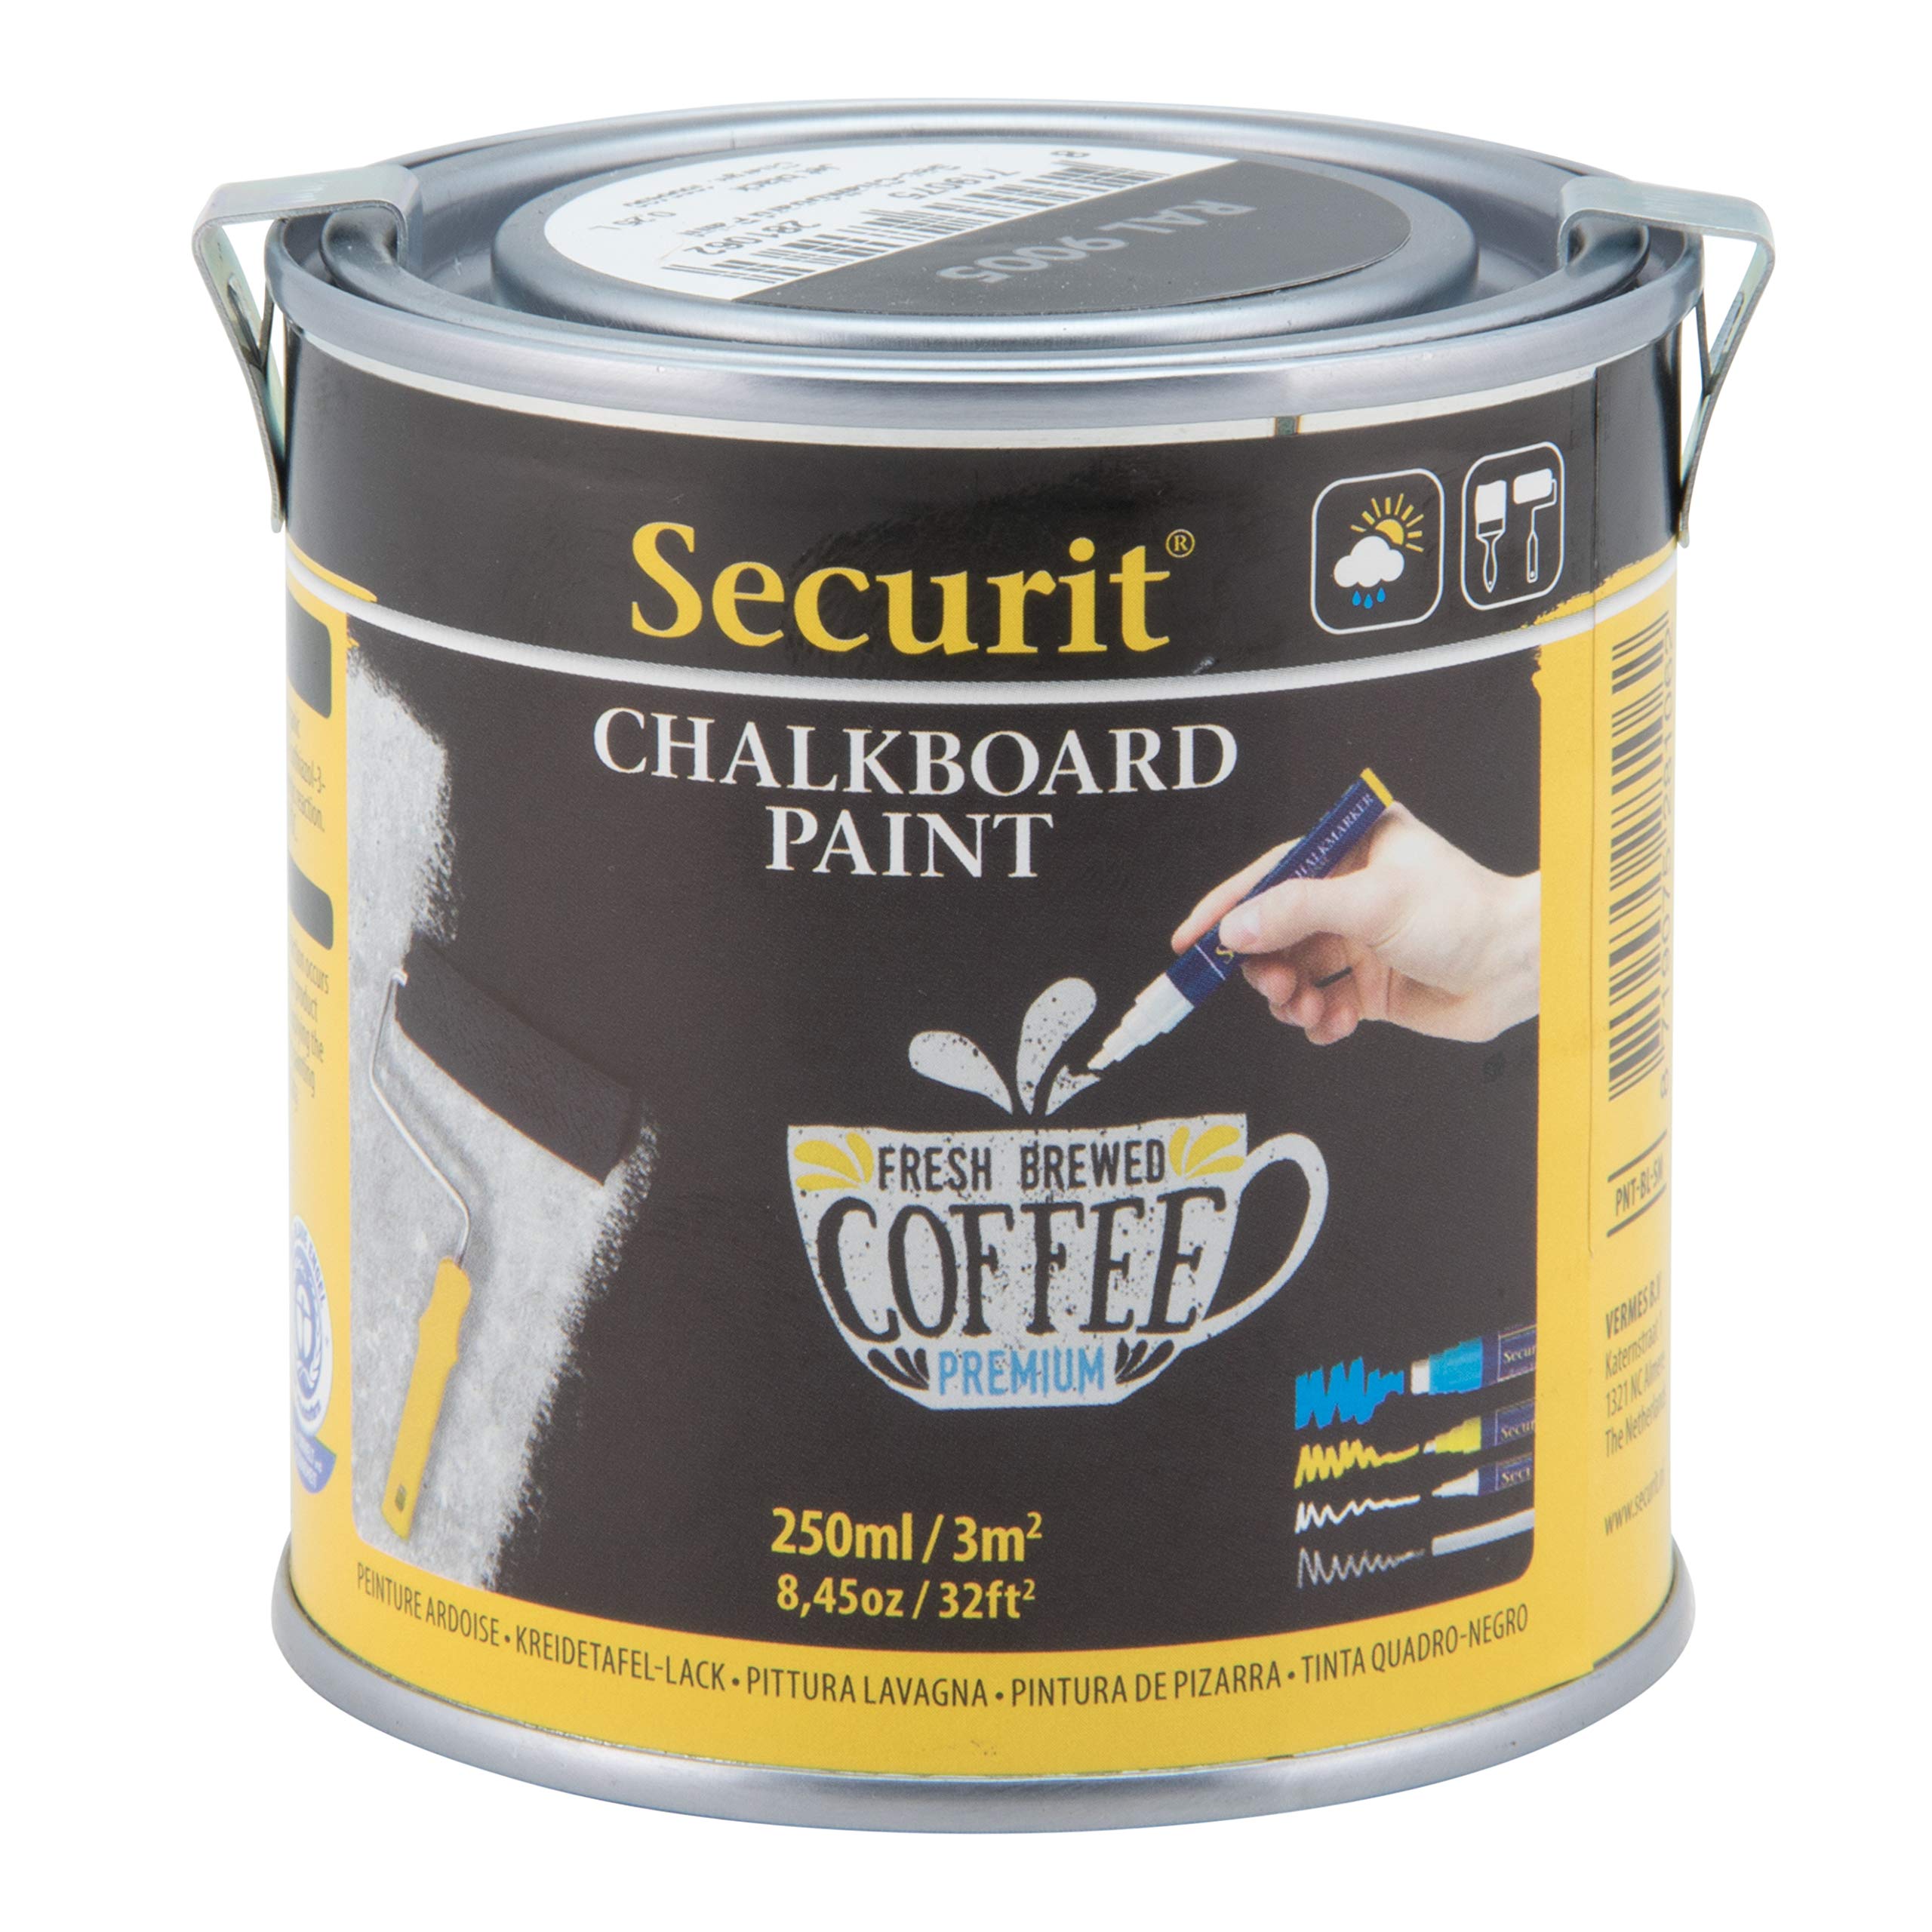 Pittura Lavagna - grigio - 250 ml (5 mq) - Securit